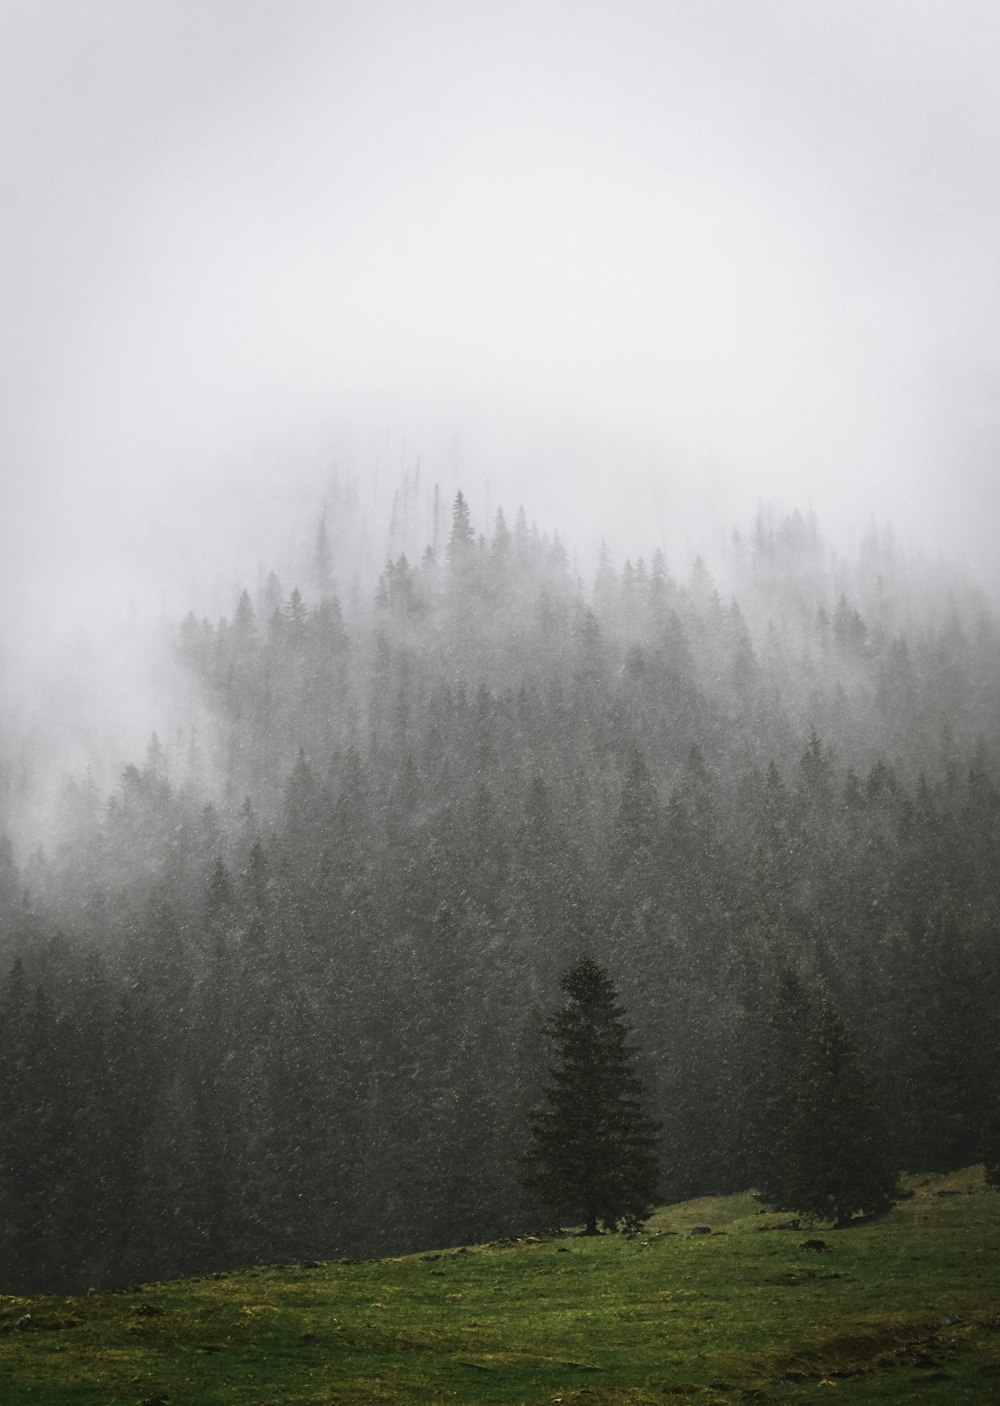 Una montagna nebbiosa coperta da molti alberi